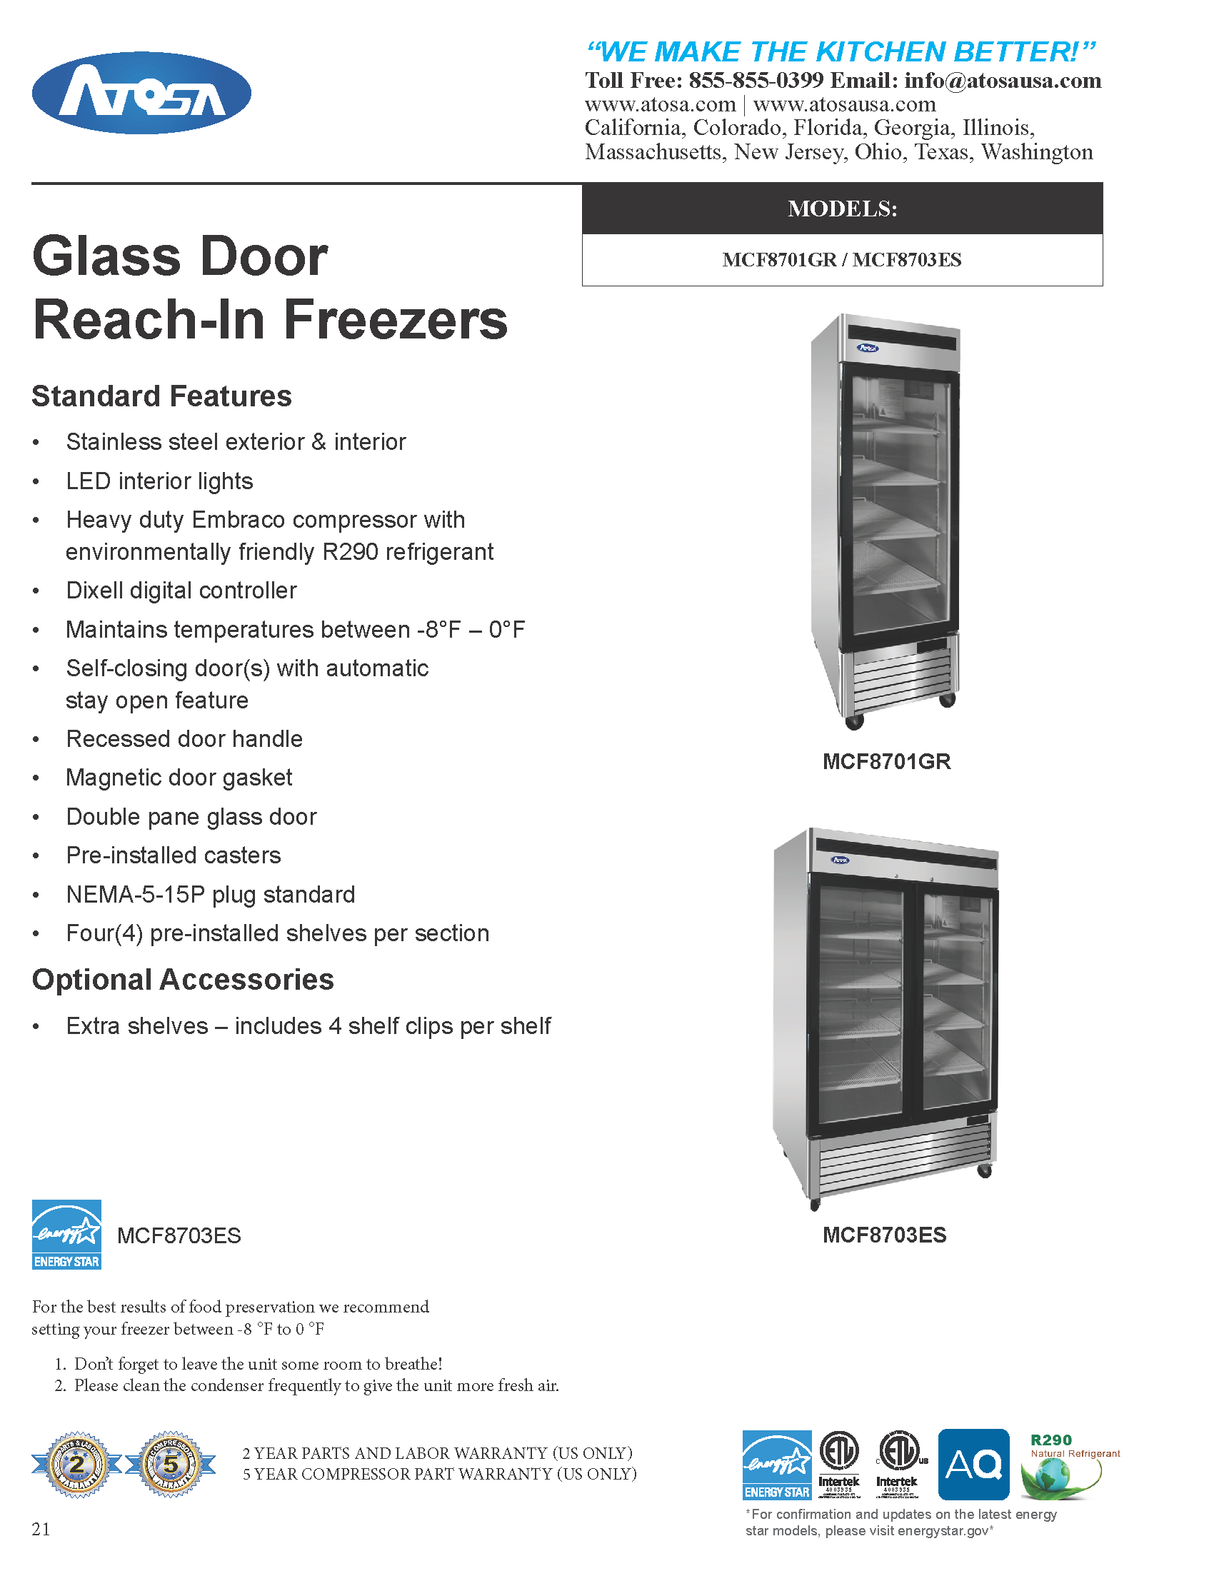 MCF8703ES Glass Door Freezer